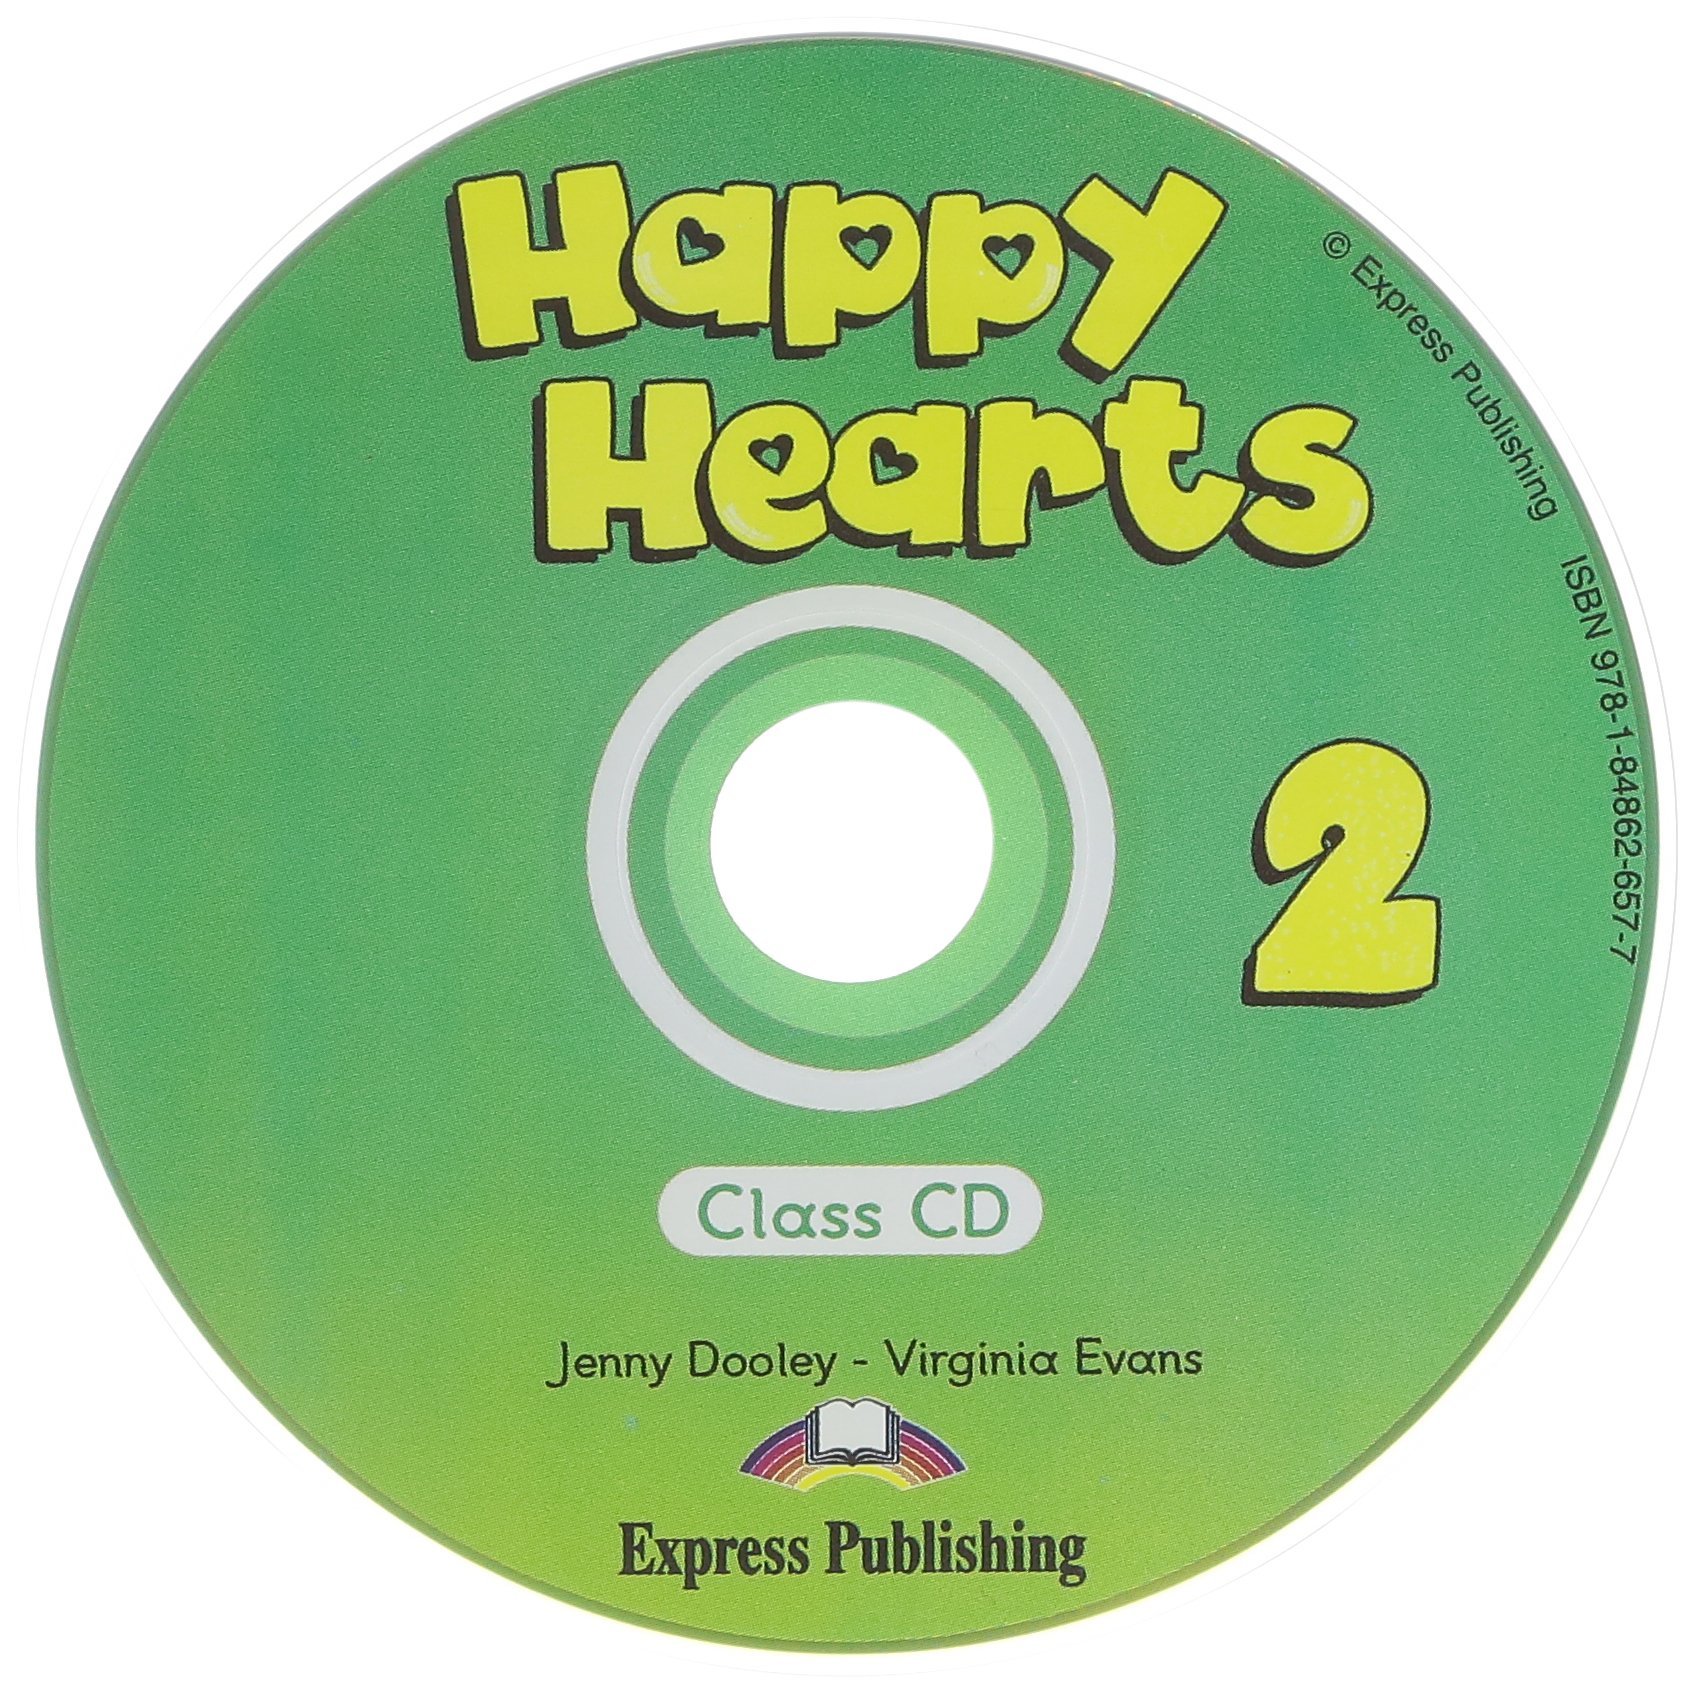 HAPPY HEARTS 2 Class Audio CD